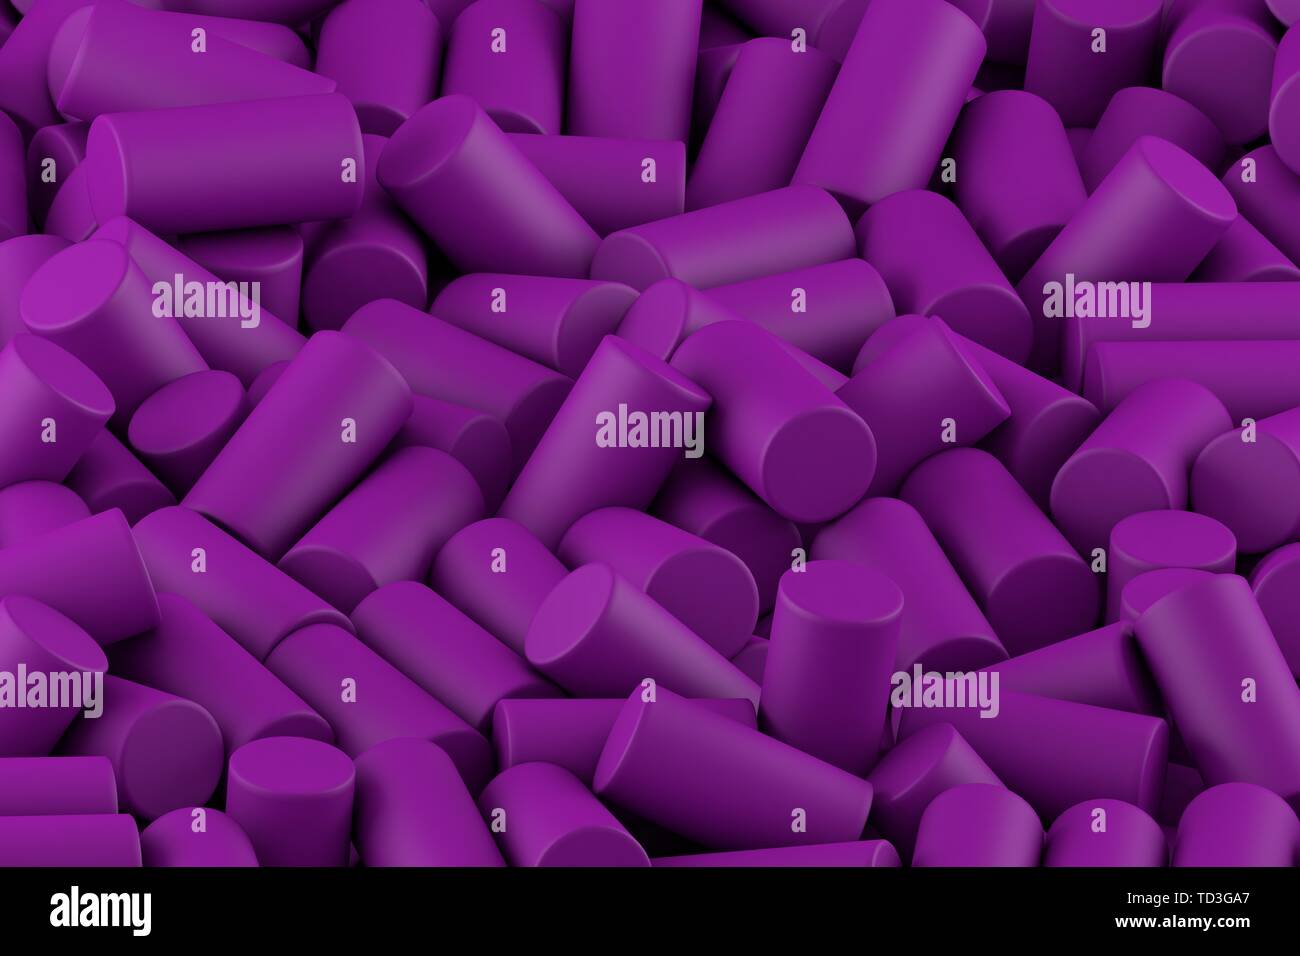 Resumen Antecedentes de aleatoriamente dispuestos cilindros mate de color púrpura Foto de stock